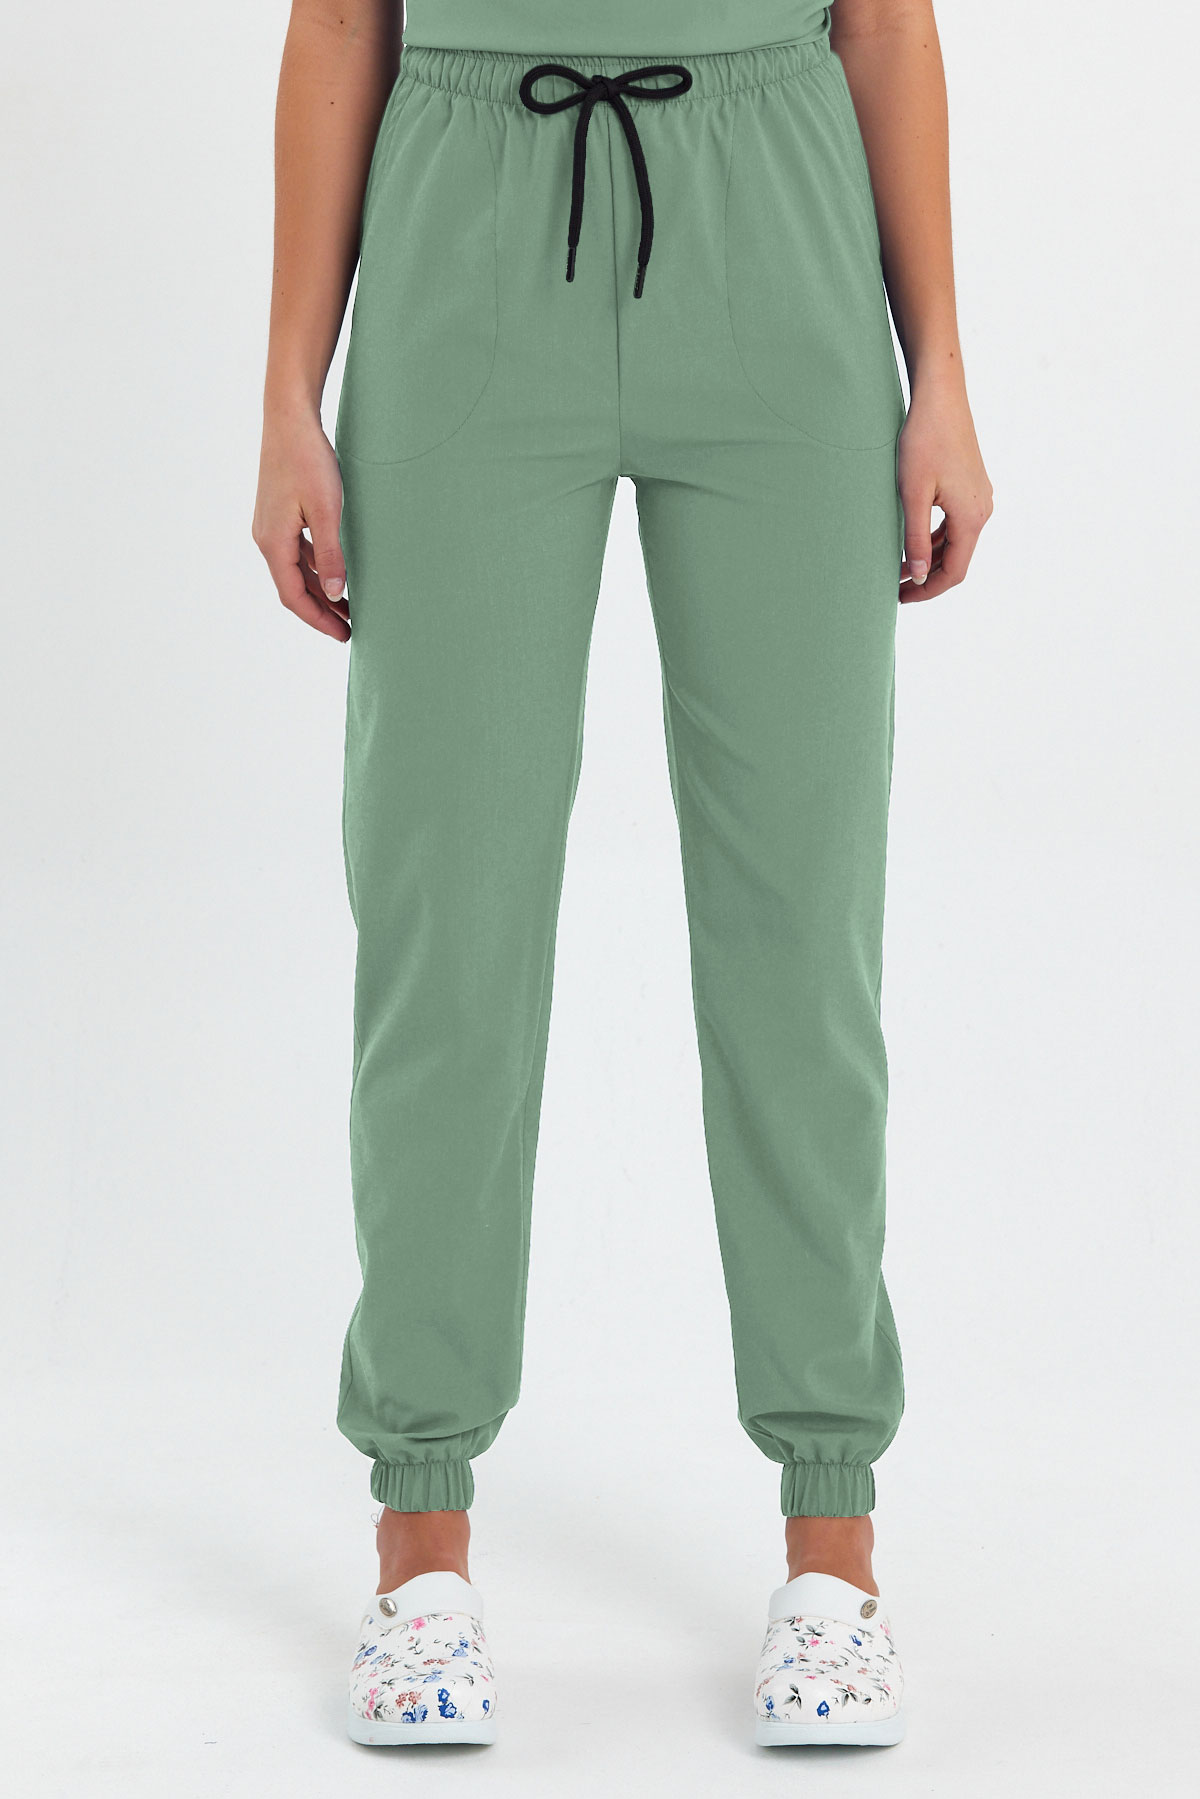 LAME 1010 Basic Likralı Mint Yeşili Scrubs, Hemşire Forması Lastikli Paça Pantolon